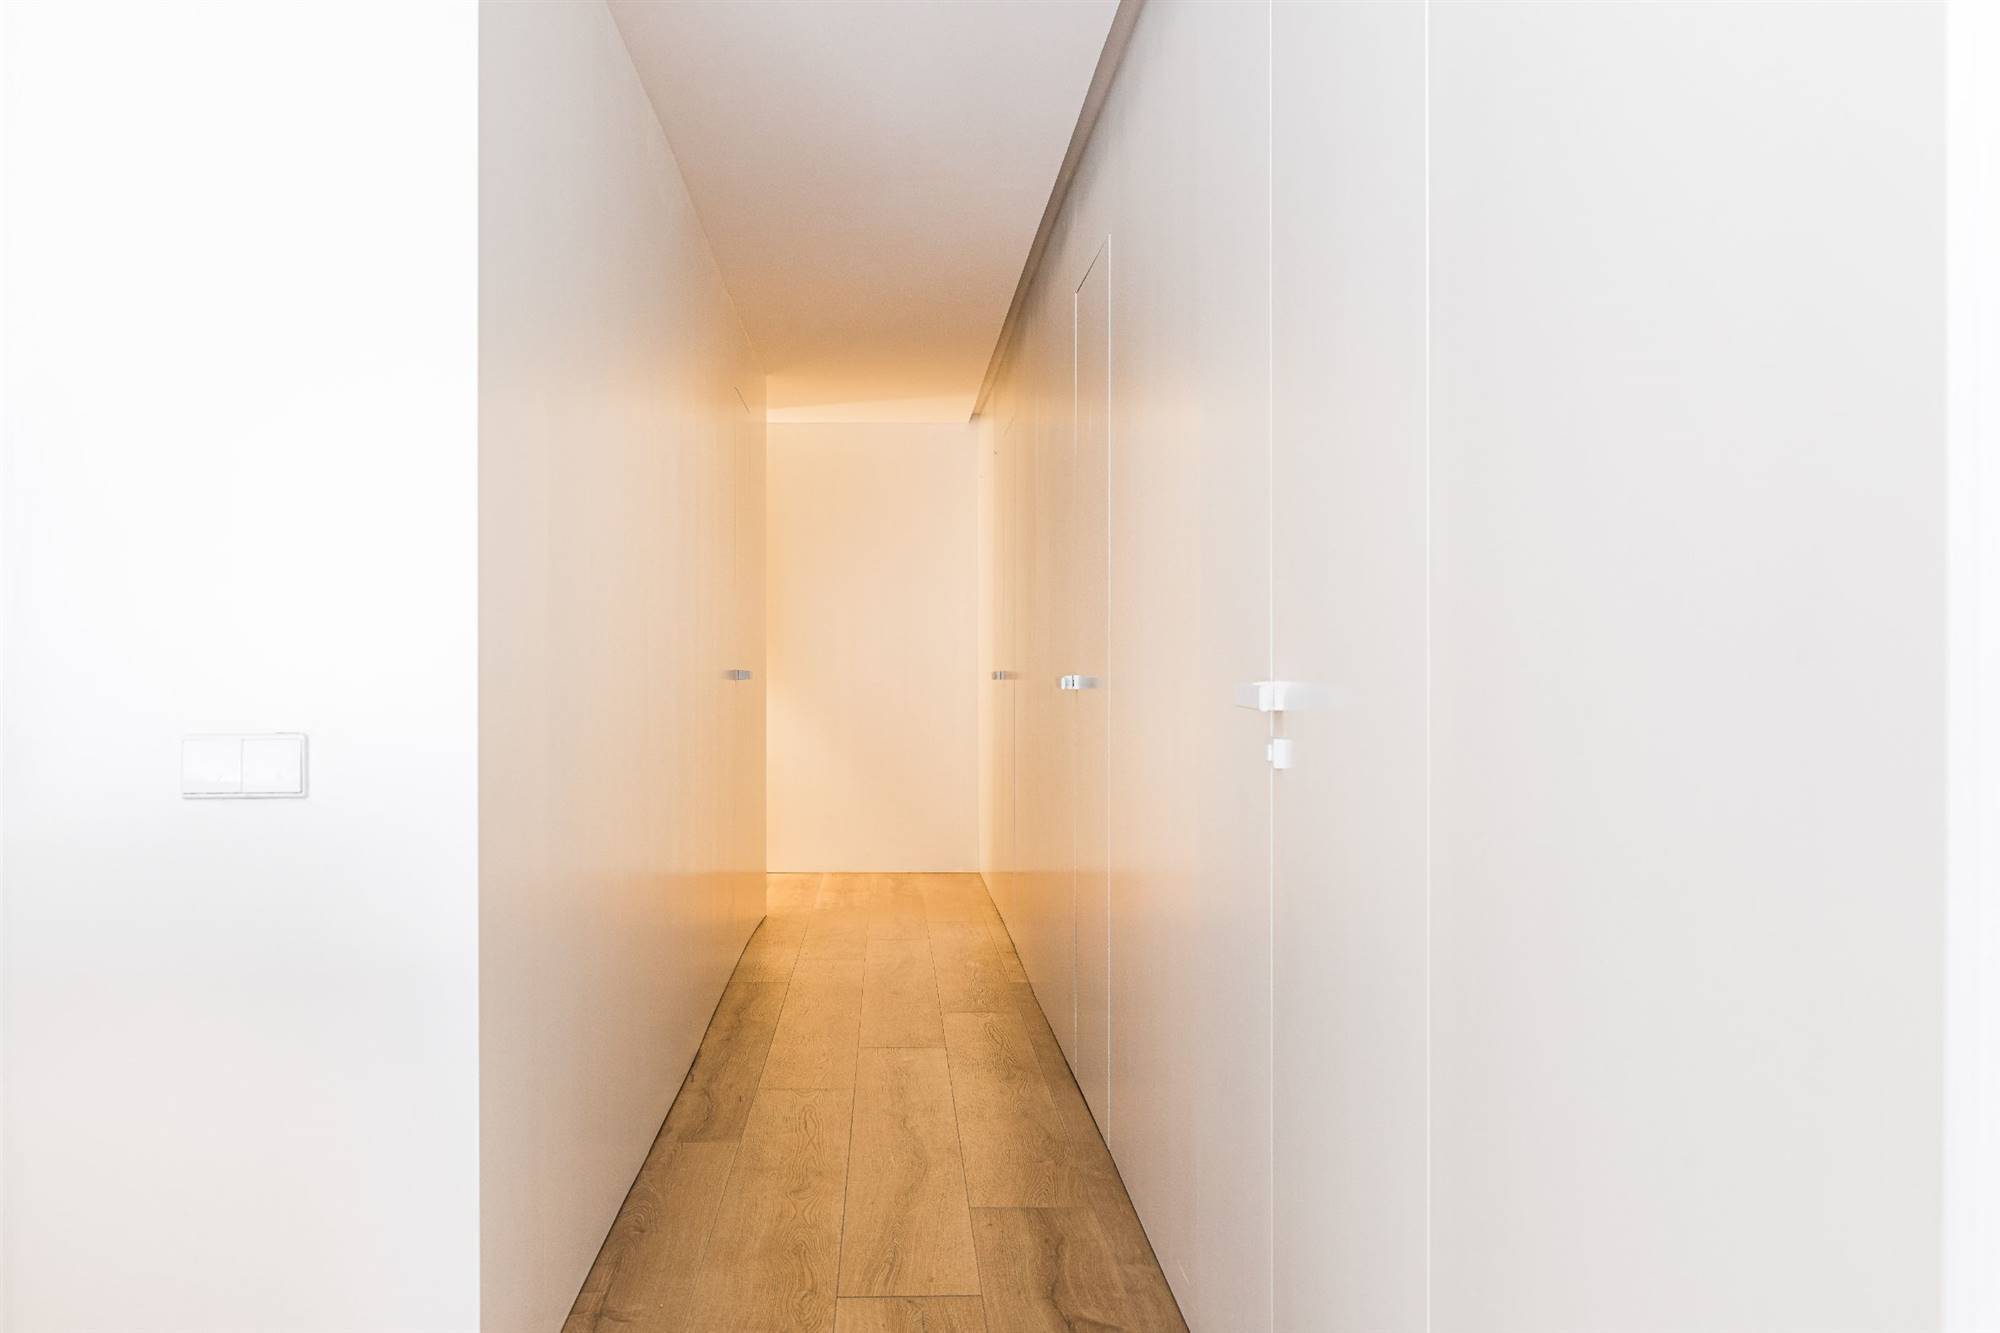 Pasillo moderno y luminoso con suelo de madera, luces leds y paneles lacados en blanco en la pared.